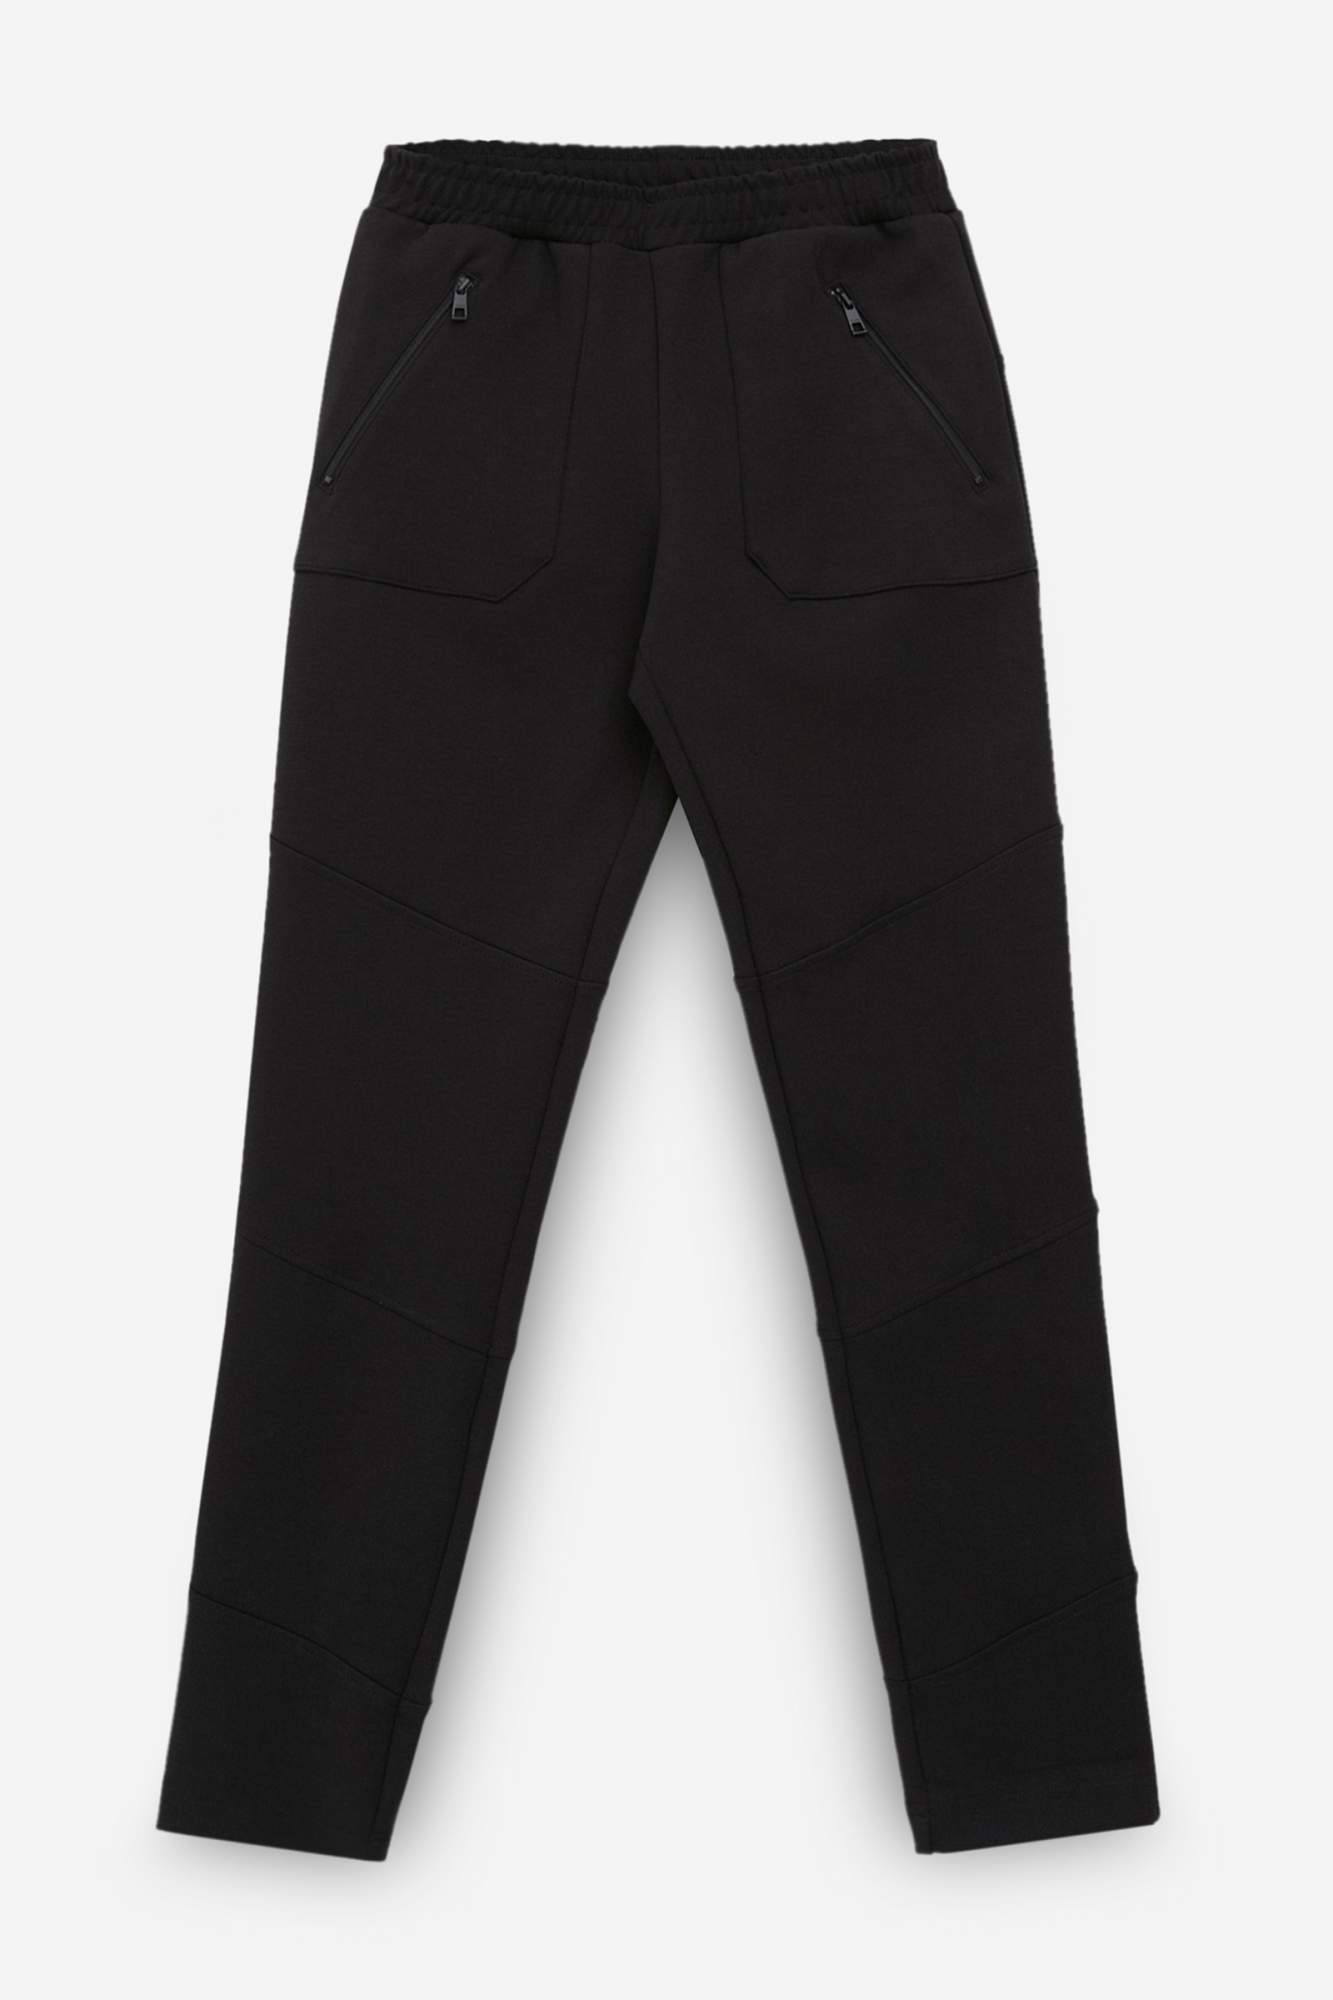 Спортивные брюки женские Finn Flare FBC13075 черные 2XL